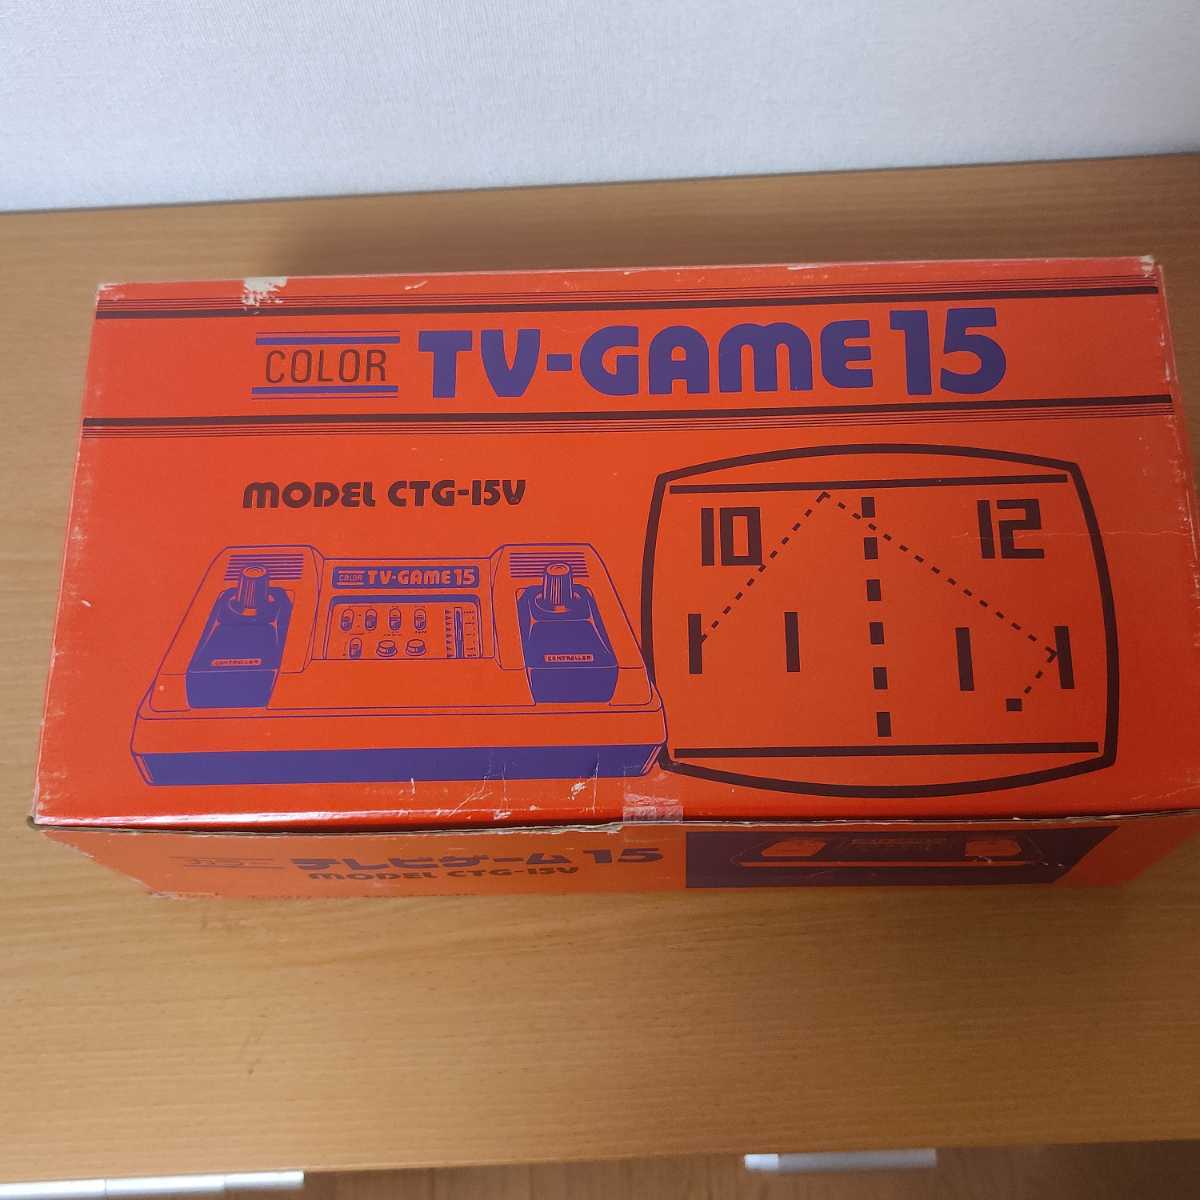 新品未使用 任天堂 カラー テレビゲーム15 CTG-15V レトロゲーム TV-GAME15 Nintendo 